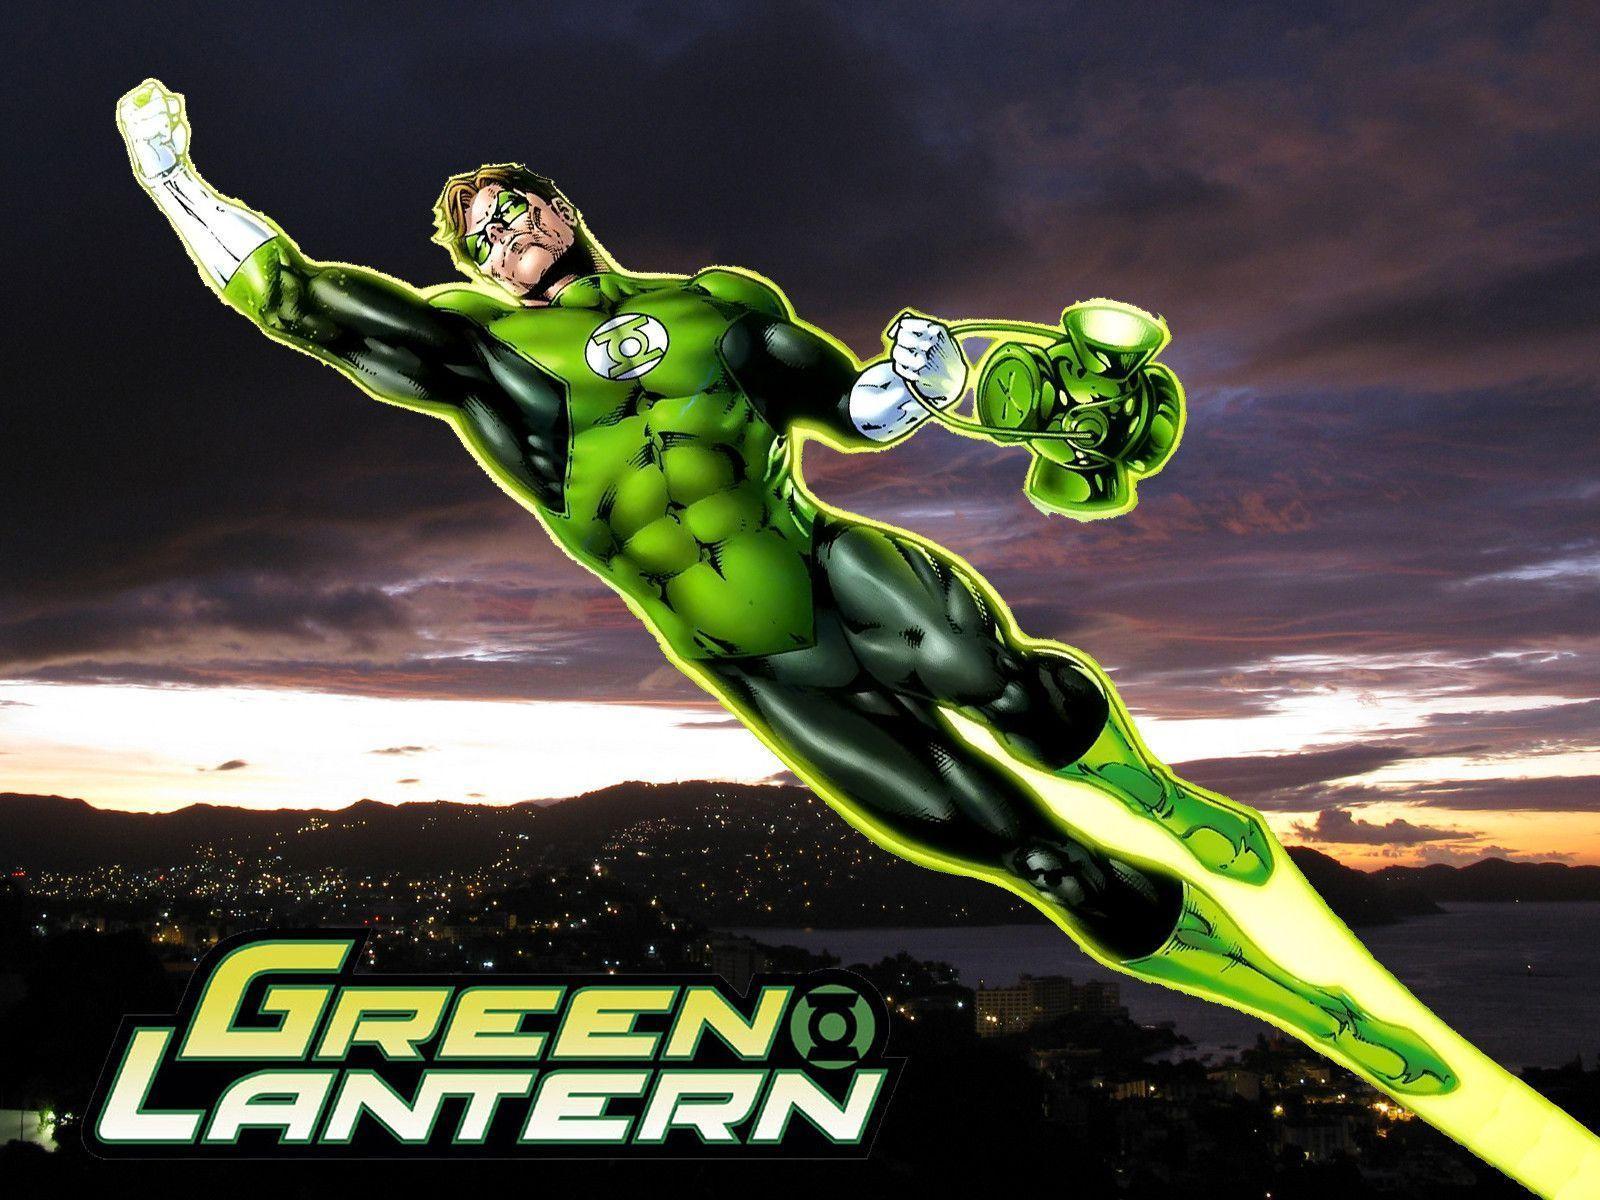 Hd Wallpaper Green Lantern Corps 1280 X 979 124 Kb Jpeg. HD